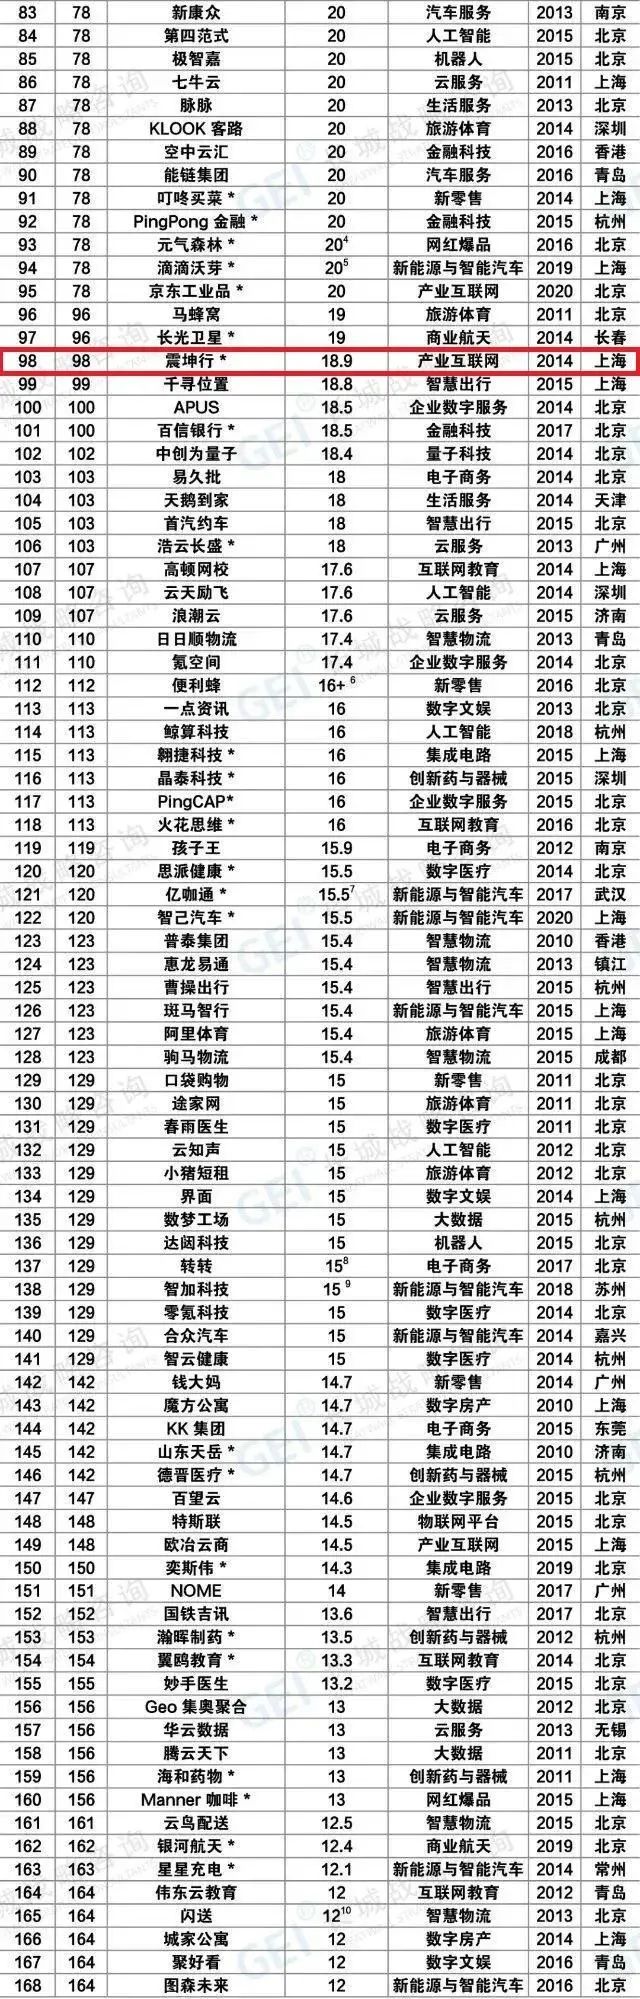 e通世界产业园3家企业入选2020年度中国独角兽企业榜单